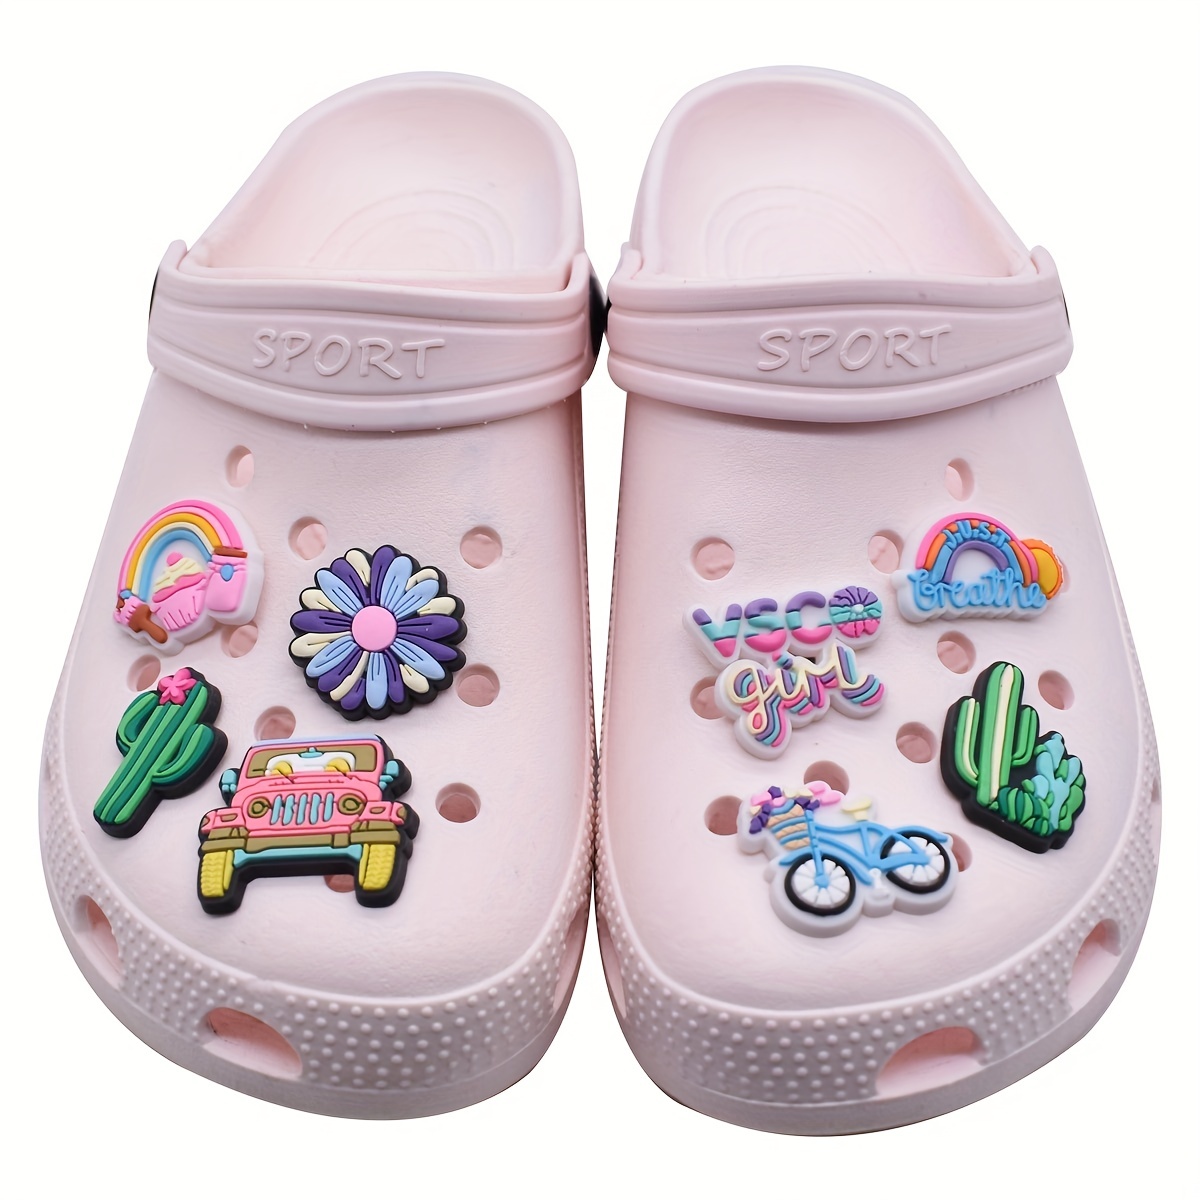 Single Sale 1pcs Capital Letters PVC Shoe Charms Decoration Colorful Garden  Shoe Accessories for croc jibz Kids Party X-mas Gift